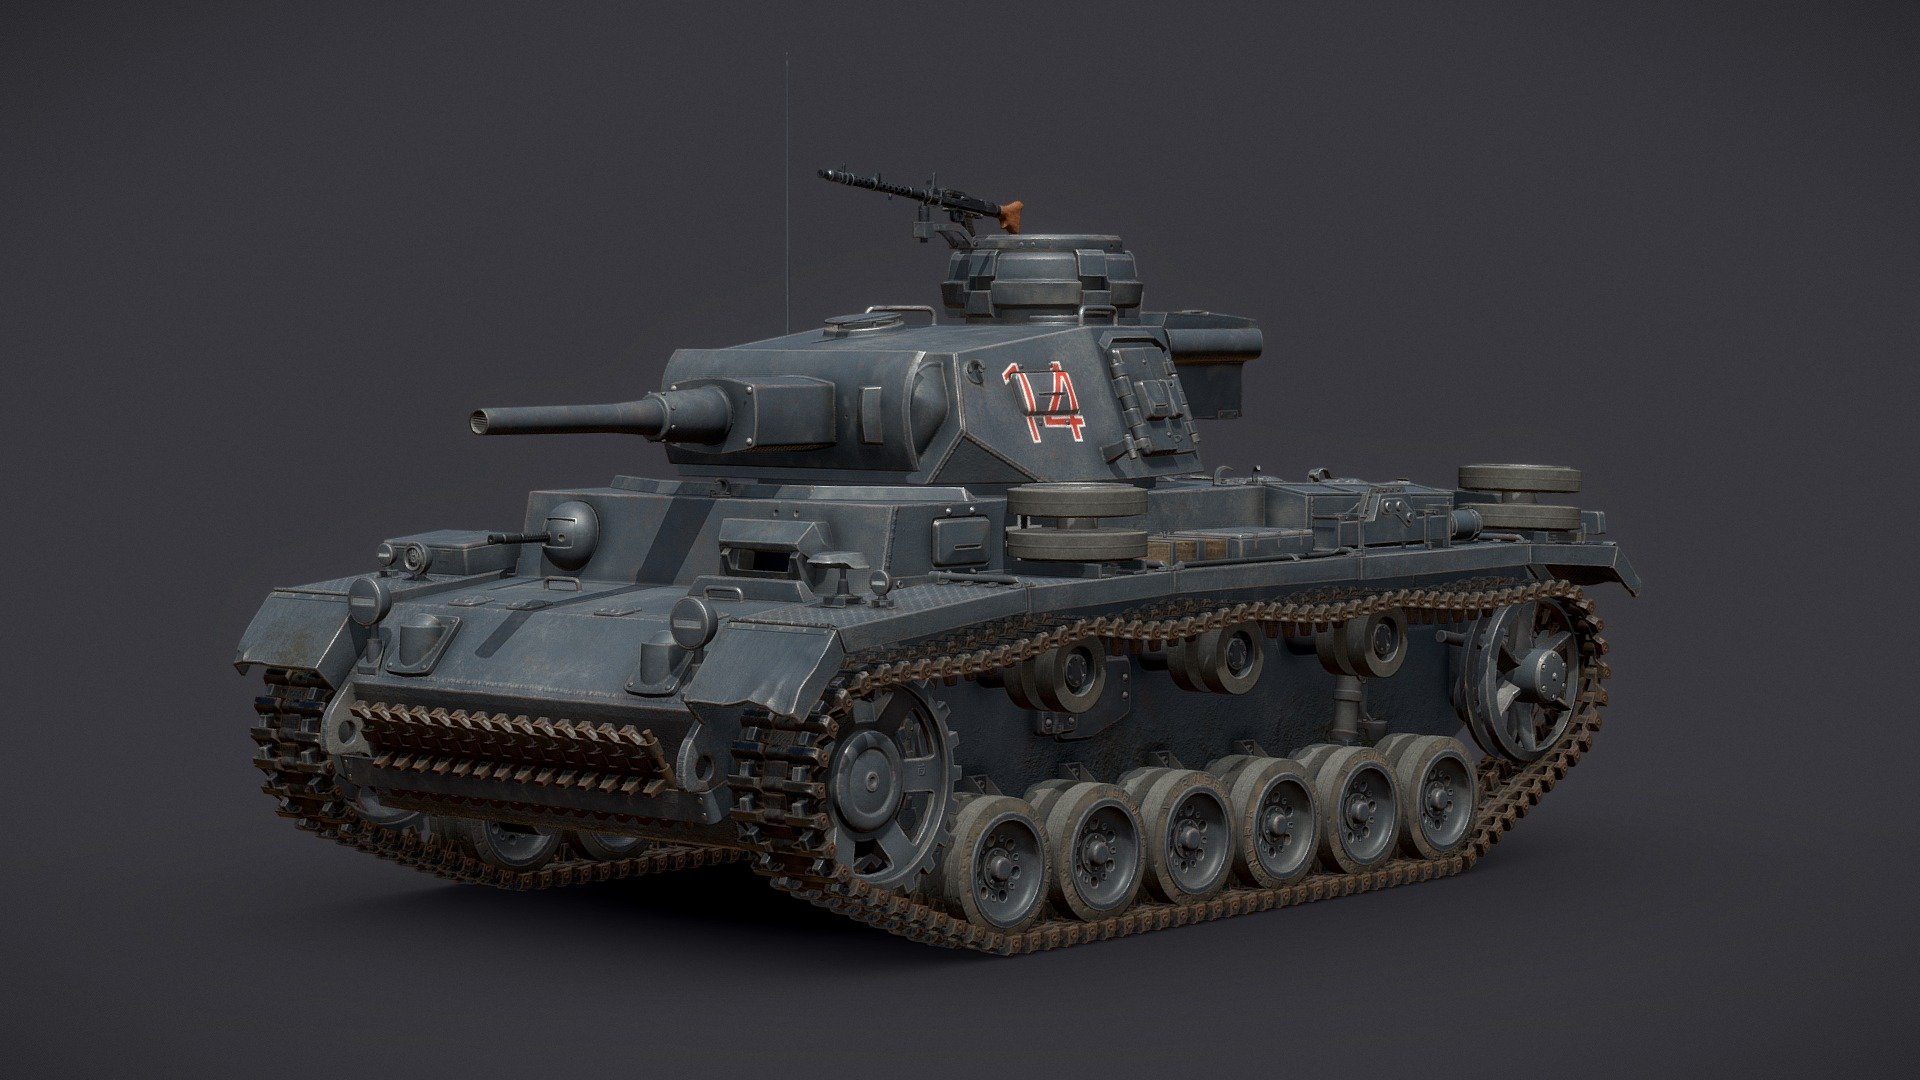 1941 Panzer III Ausf.J medium main battle tank, also known as the Panzerkampfwagen III Ausführung J 3d model